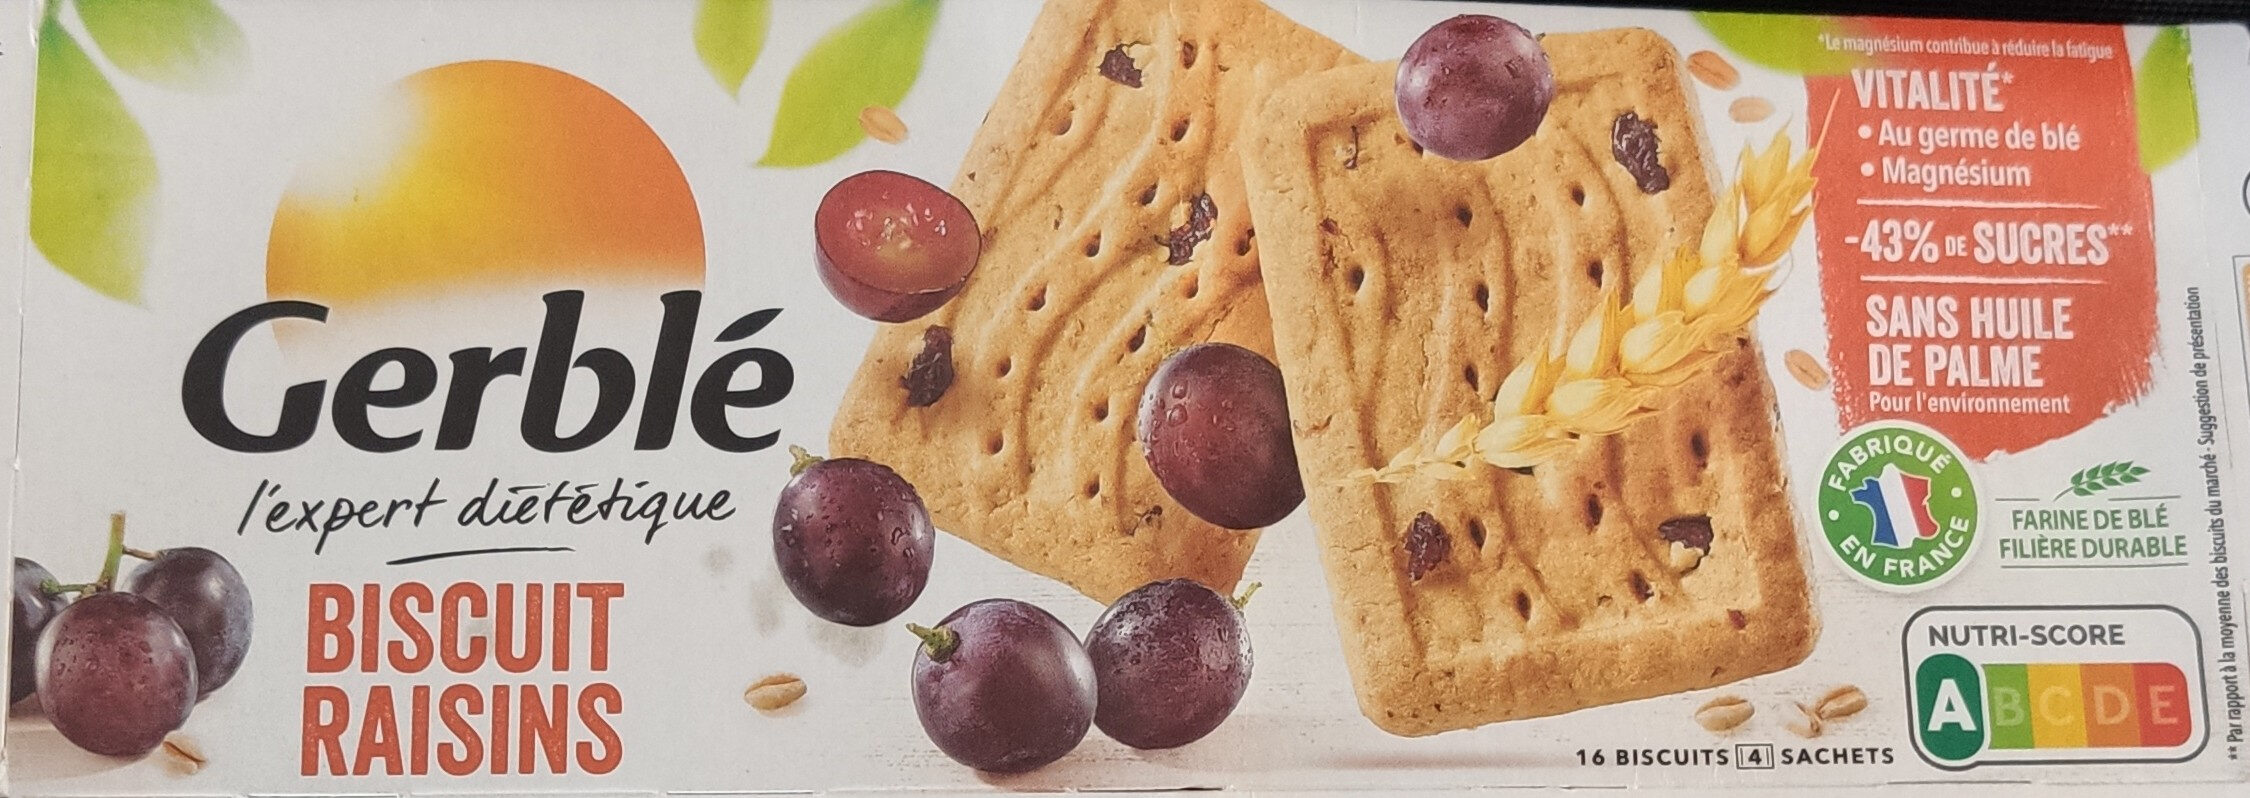 Biscuit raisins - Prodotto - fr